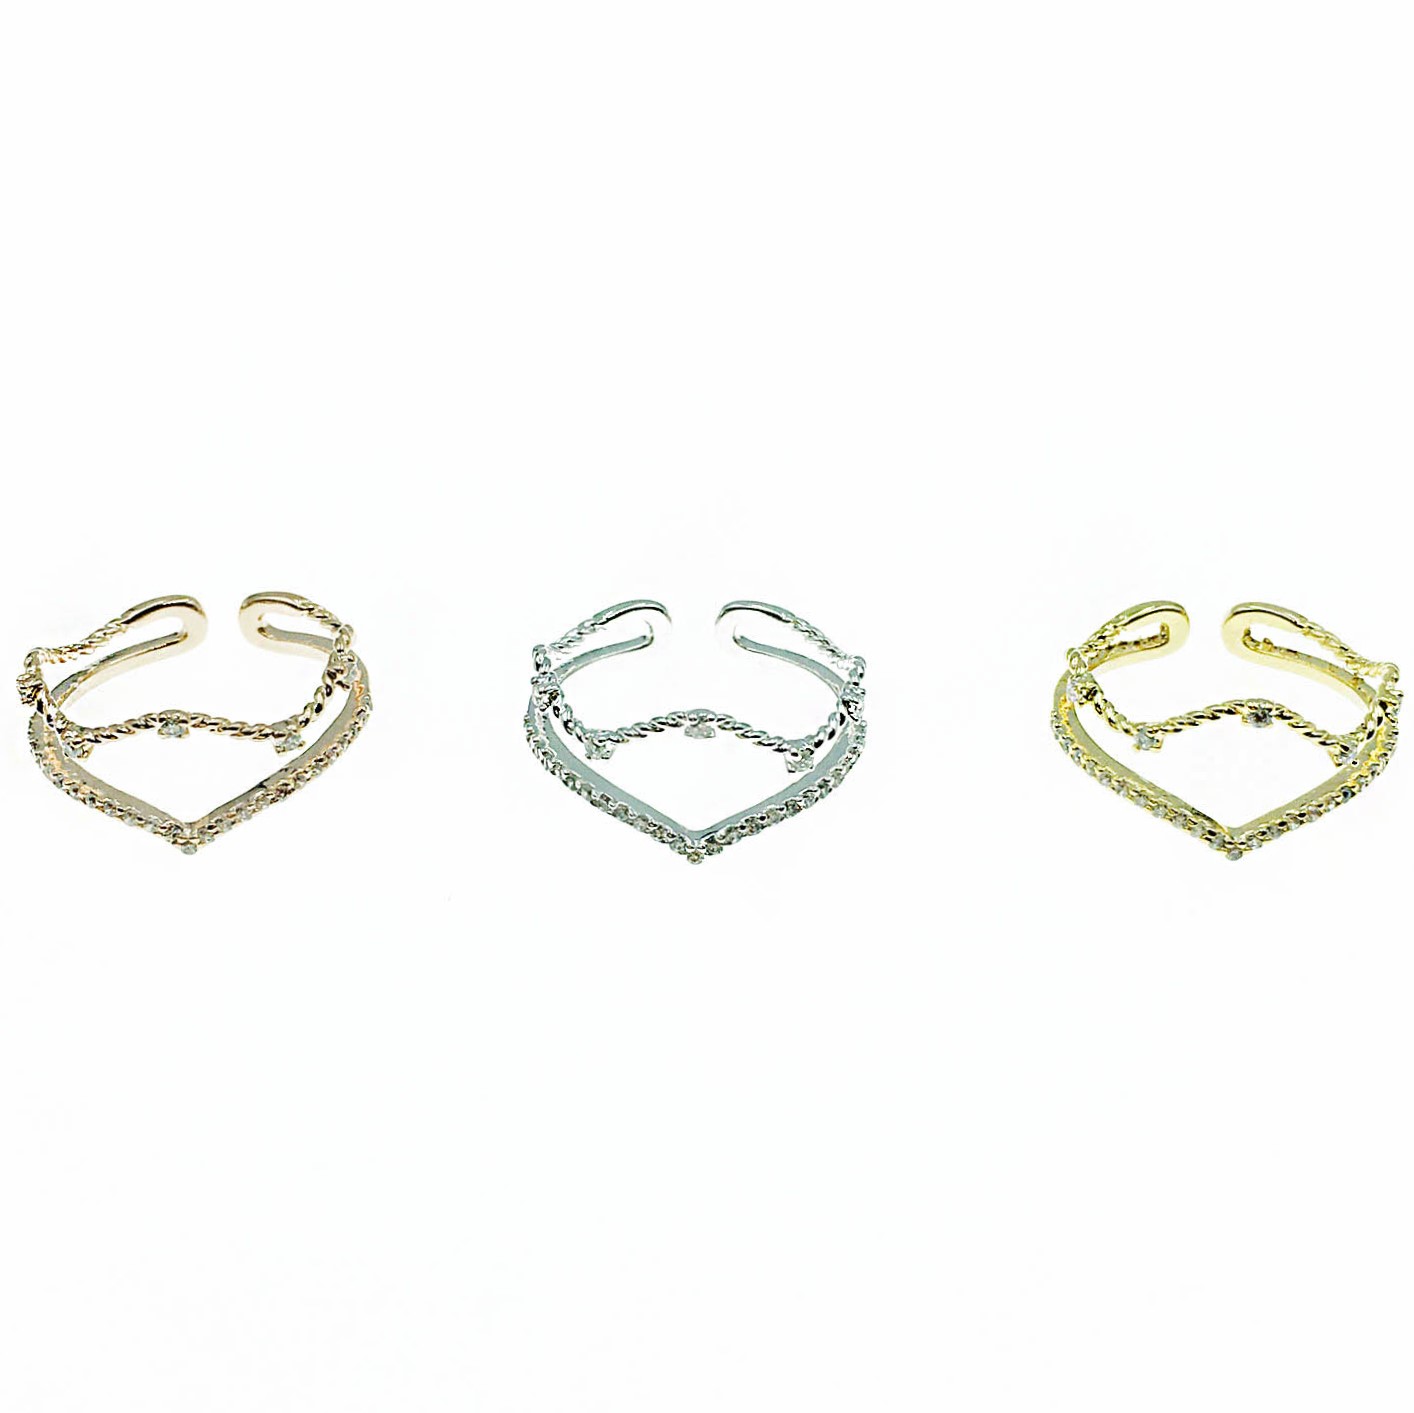 韓國 925純銀 水鑽 線條 簡約 明星款飾品 三色 可調式 戒指